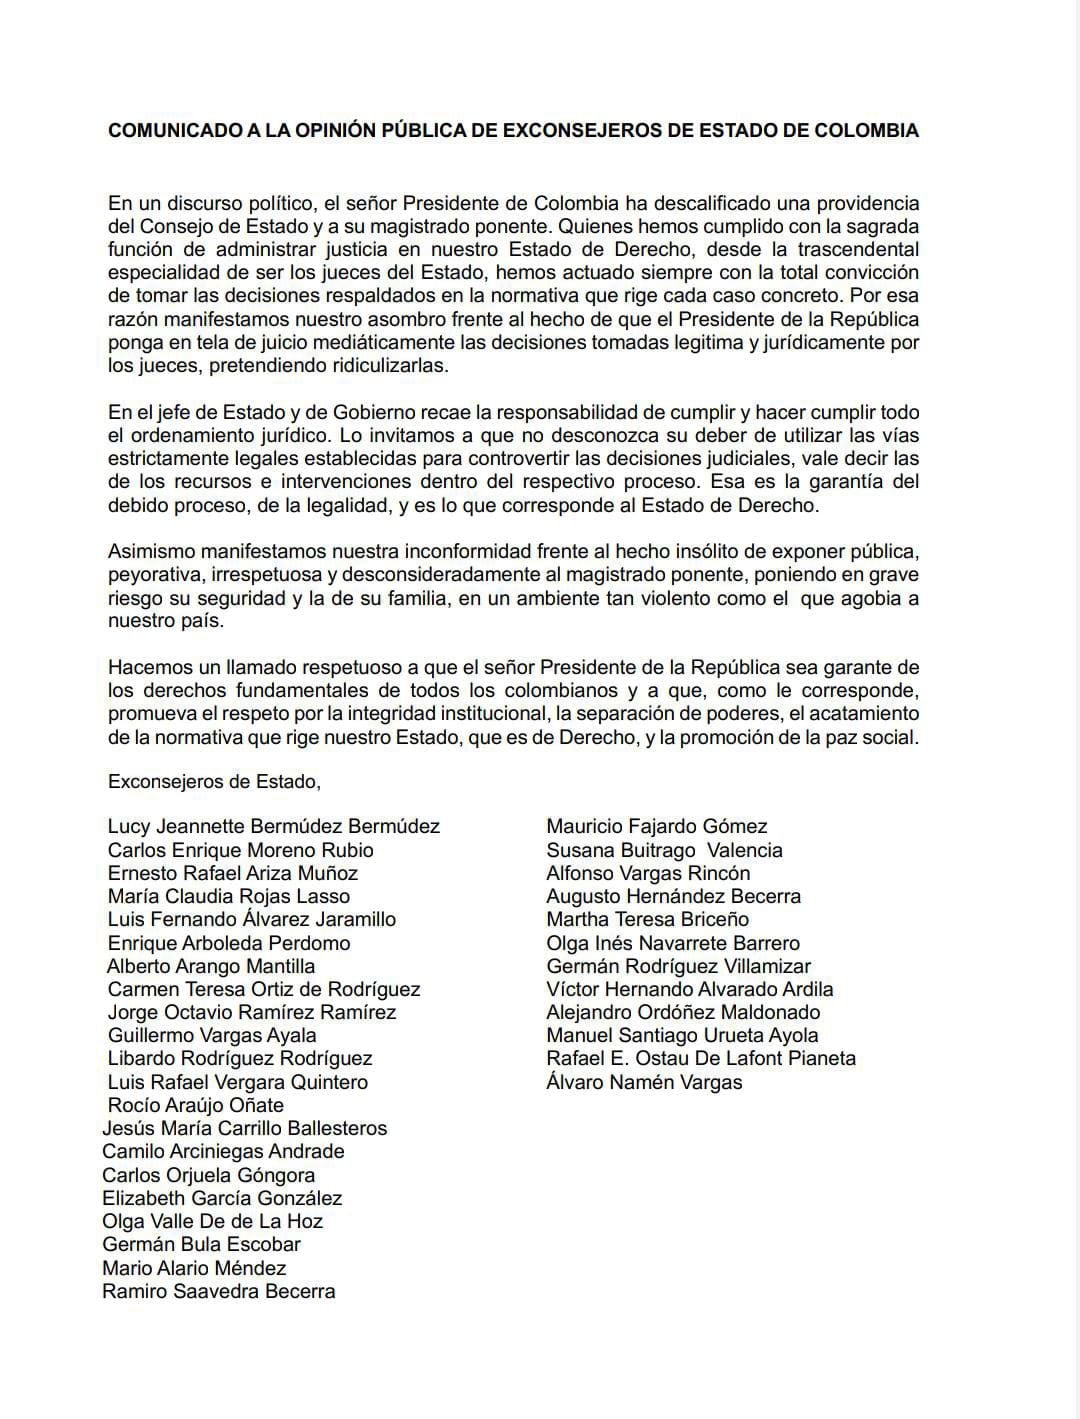 Esta fue la carta que los exconsejeros enviaron al presidente Gustavo Petro.